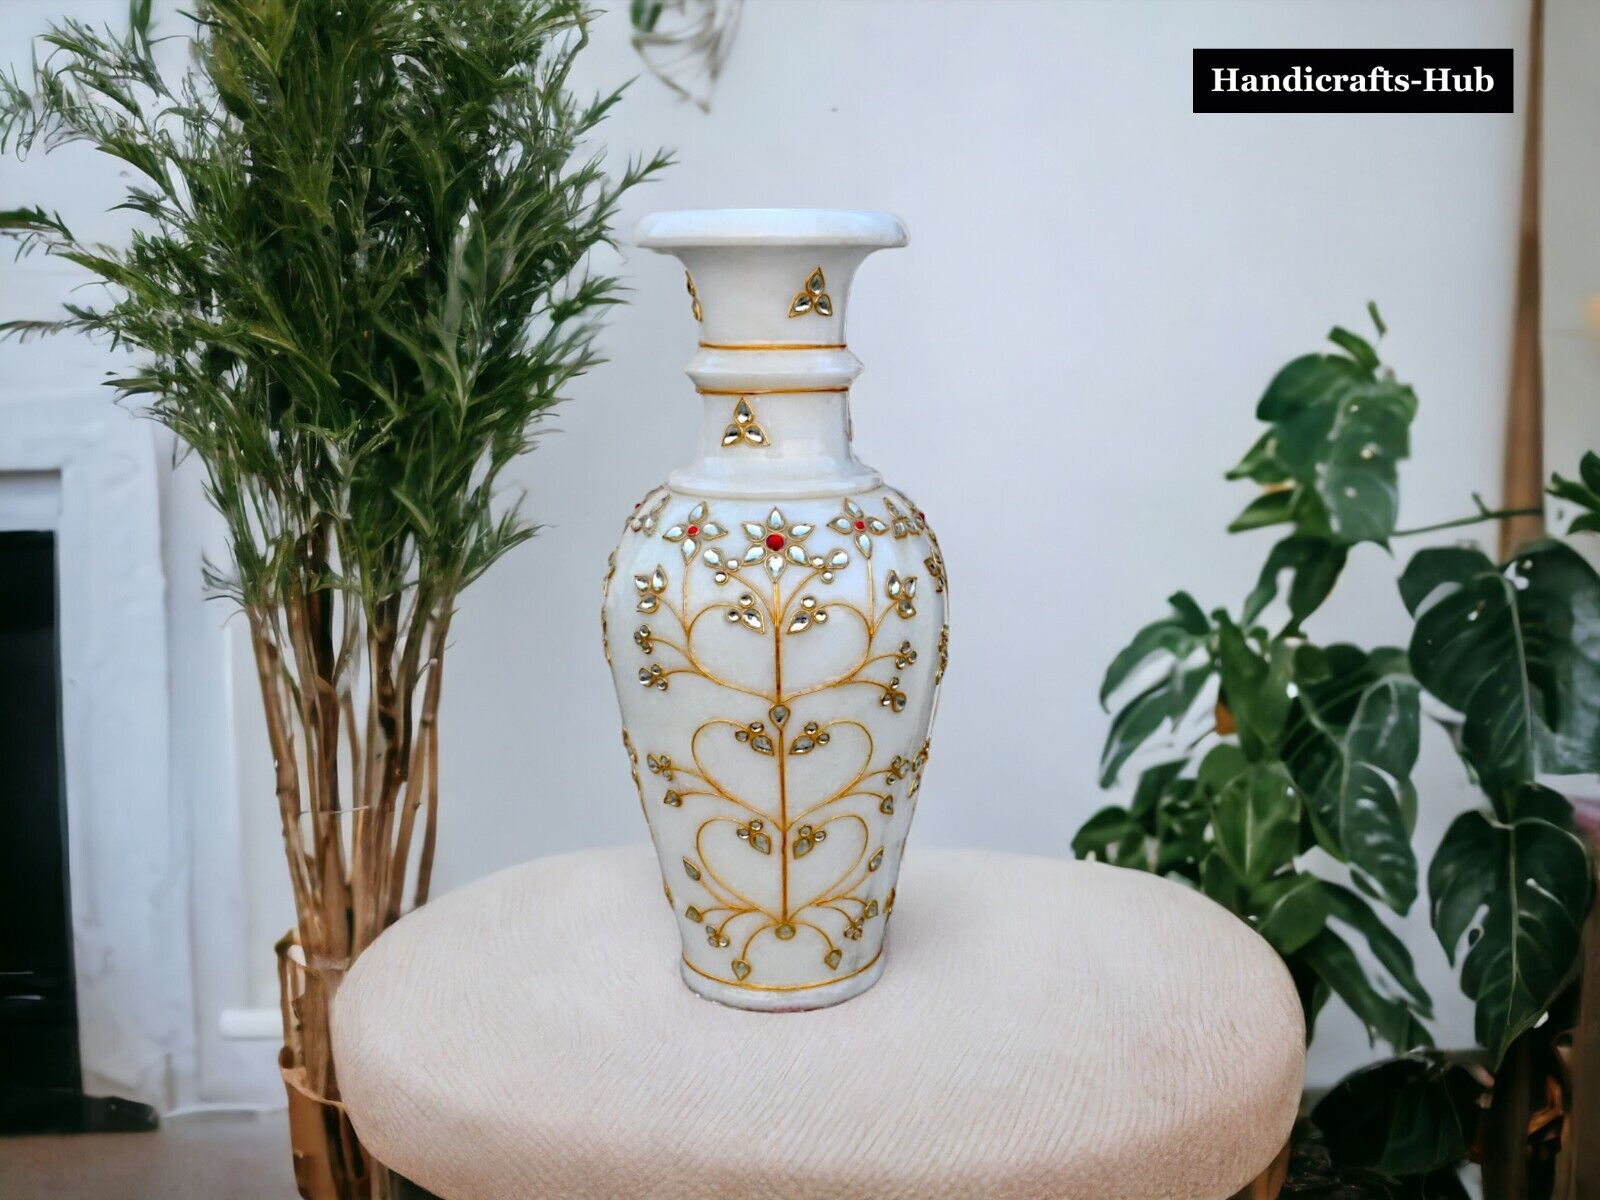 Marble Decorative Flower Vase Pot Home Decor Accent Article Housewarming Wedding